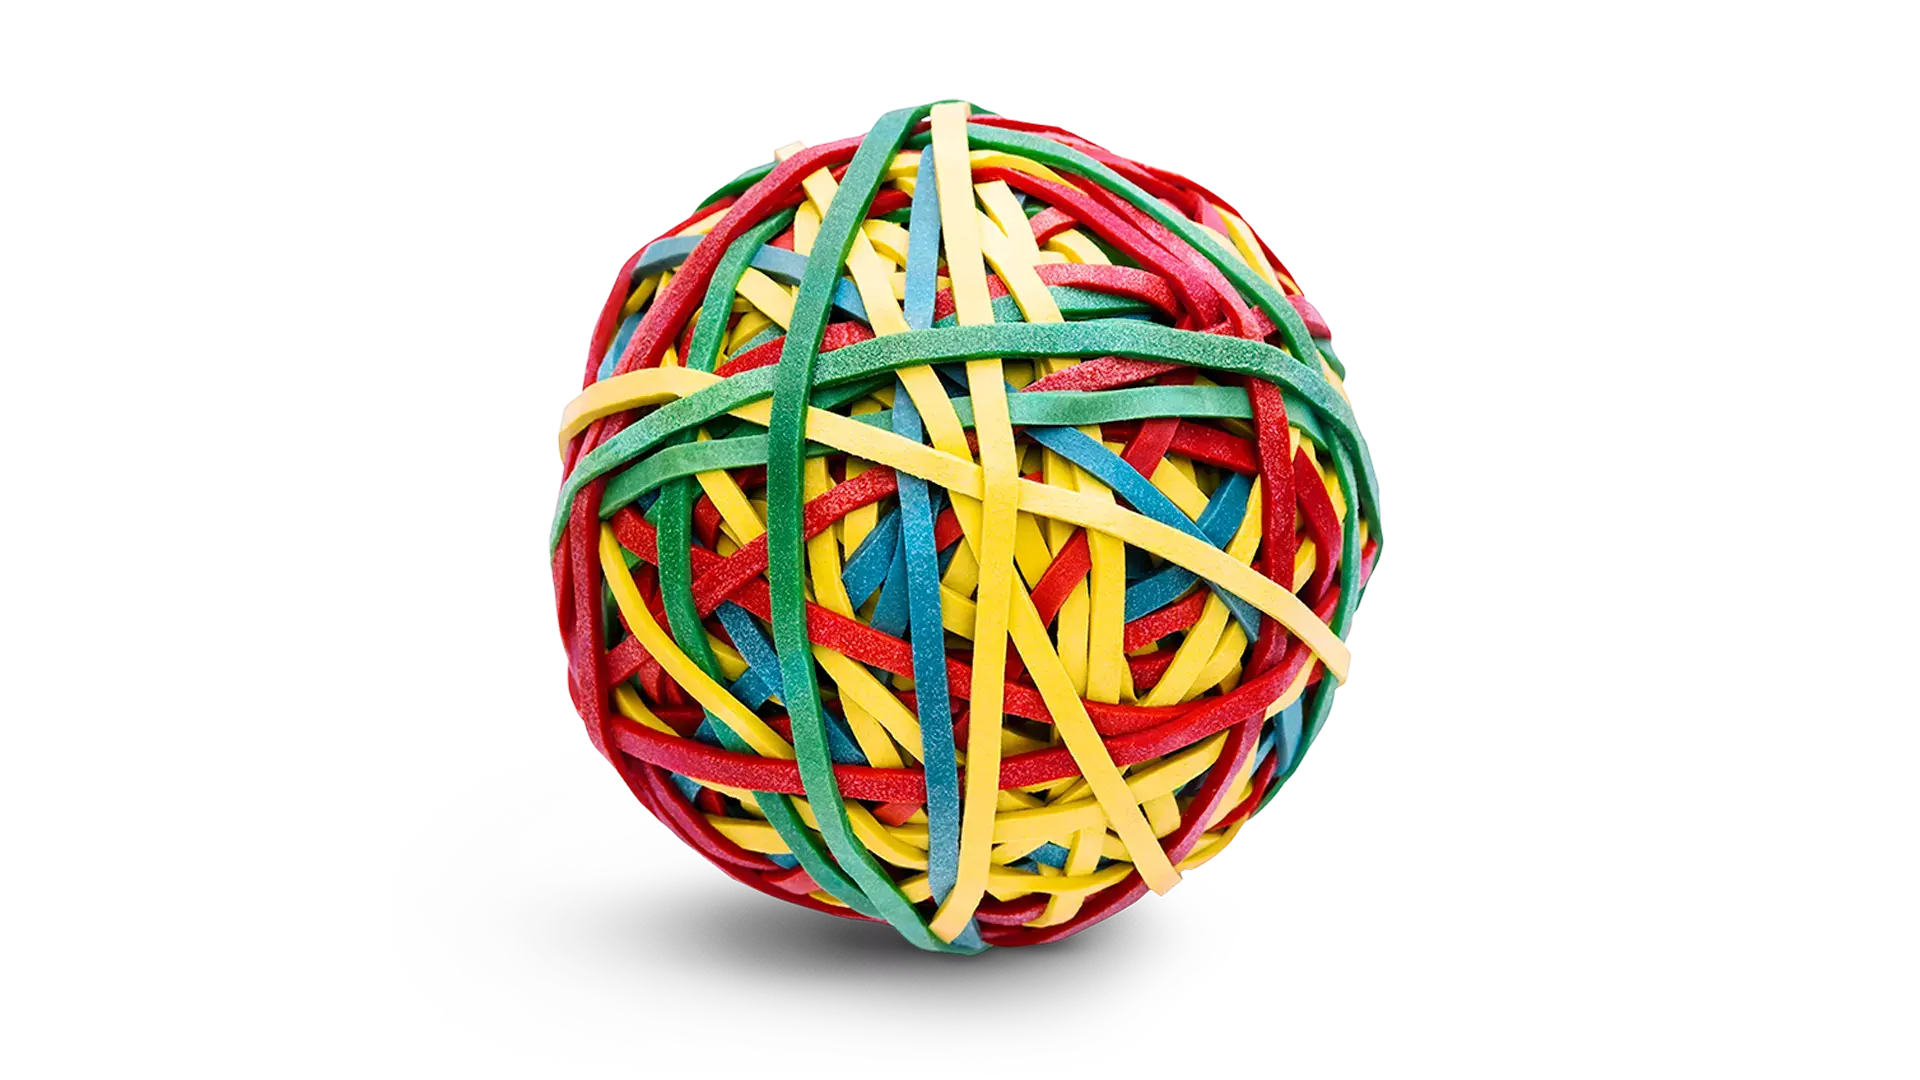 Een bal bestaande uit elastiekjes.